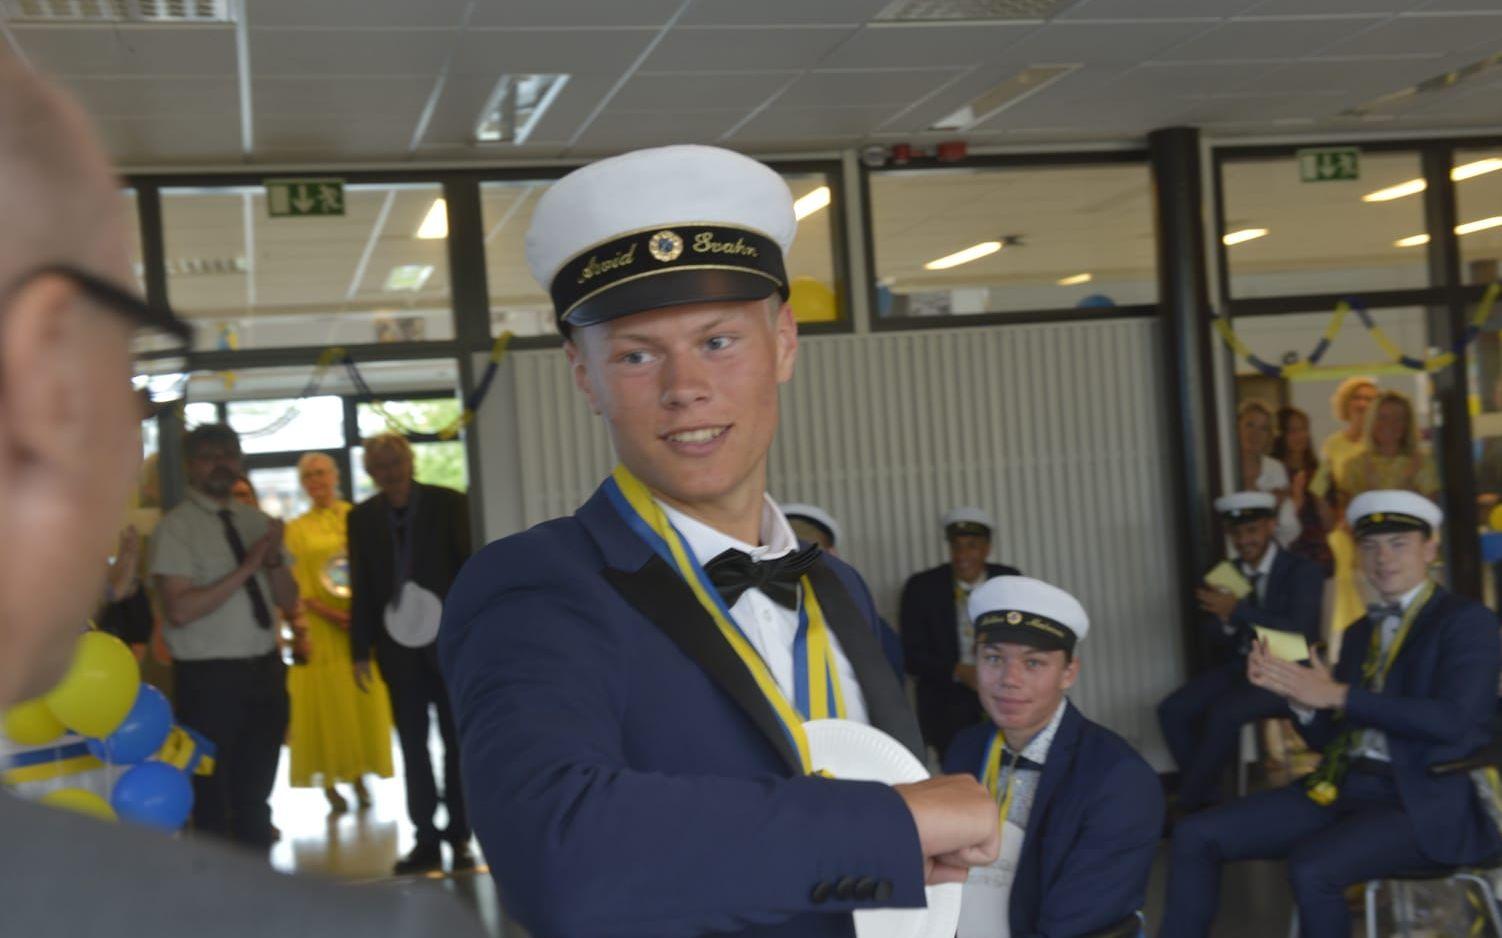 Stipendiaten Arvid Svahn coronahälsar med armbågen på rektor Lars Kyllergård.